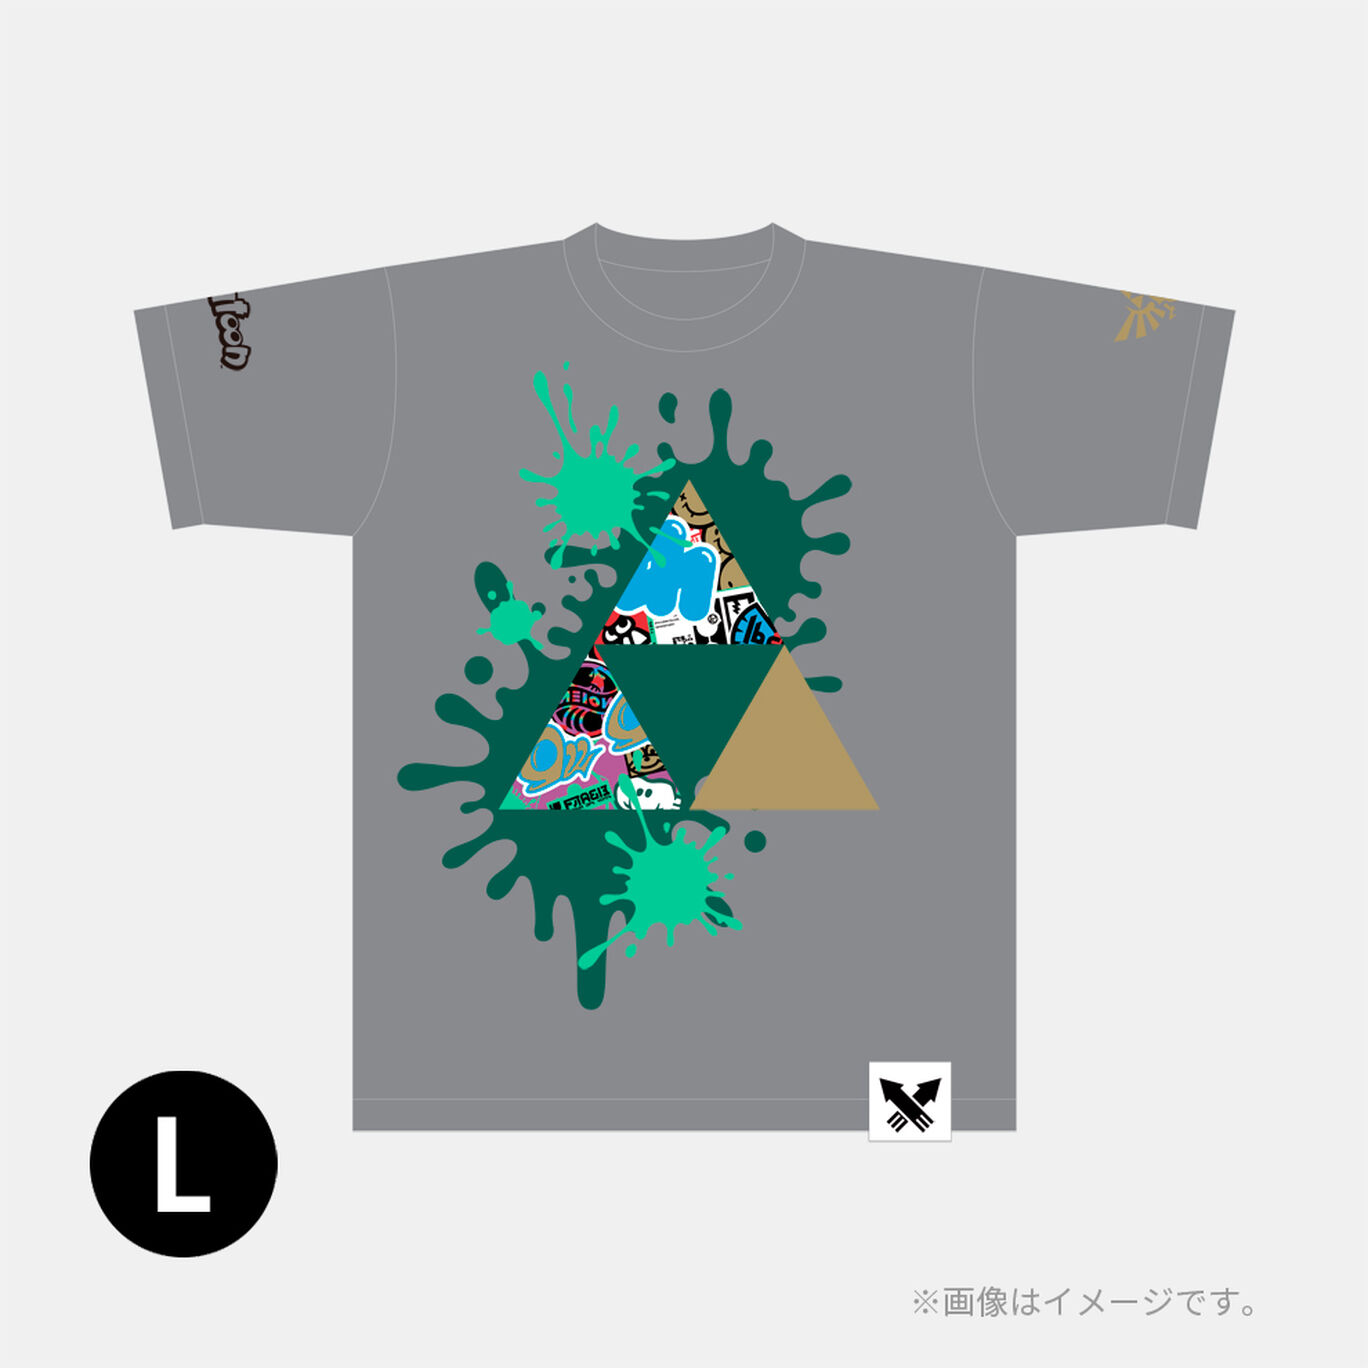 スプラトゥーン3 フェスTシャツ 勇気 L